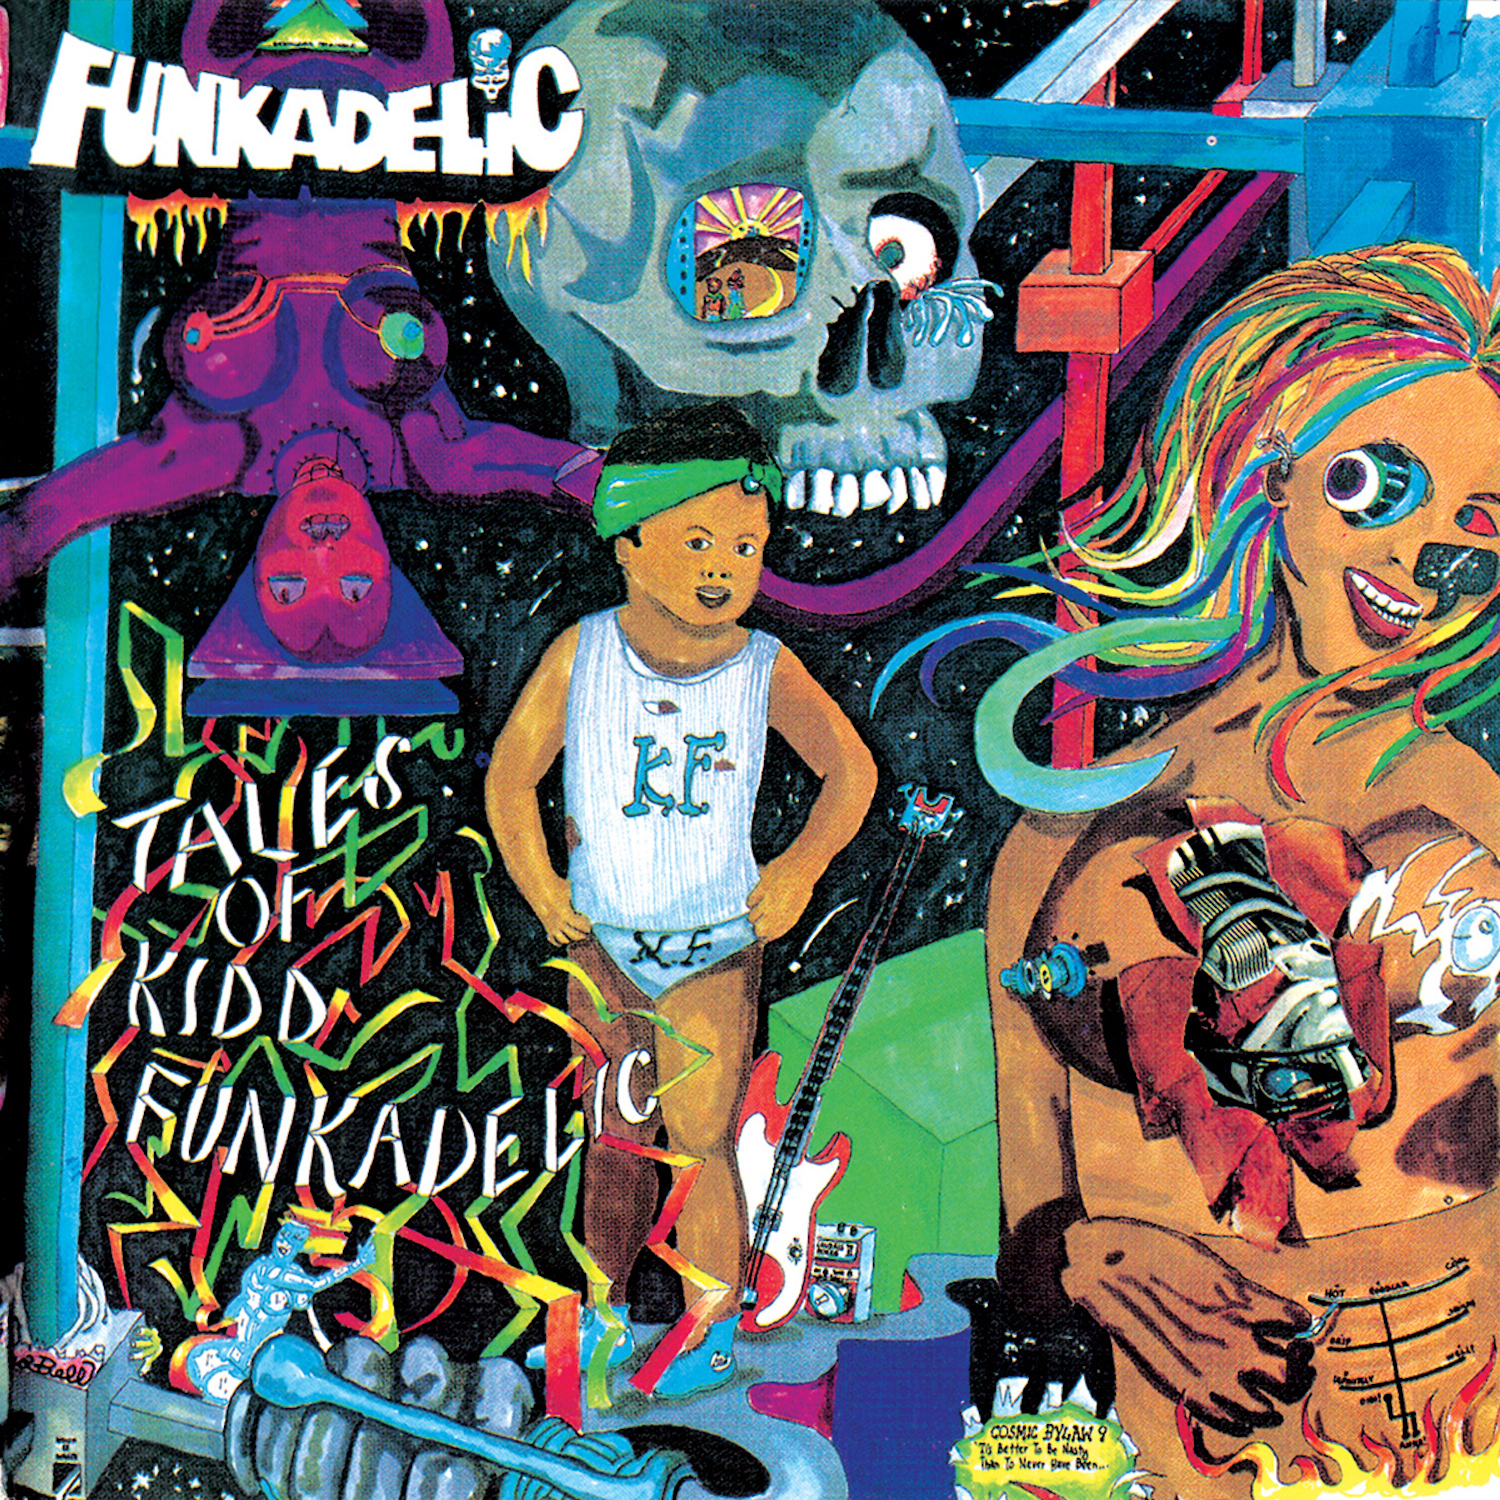 Tales of a Kidd Funkadelic